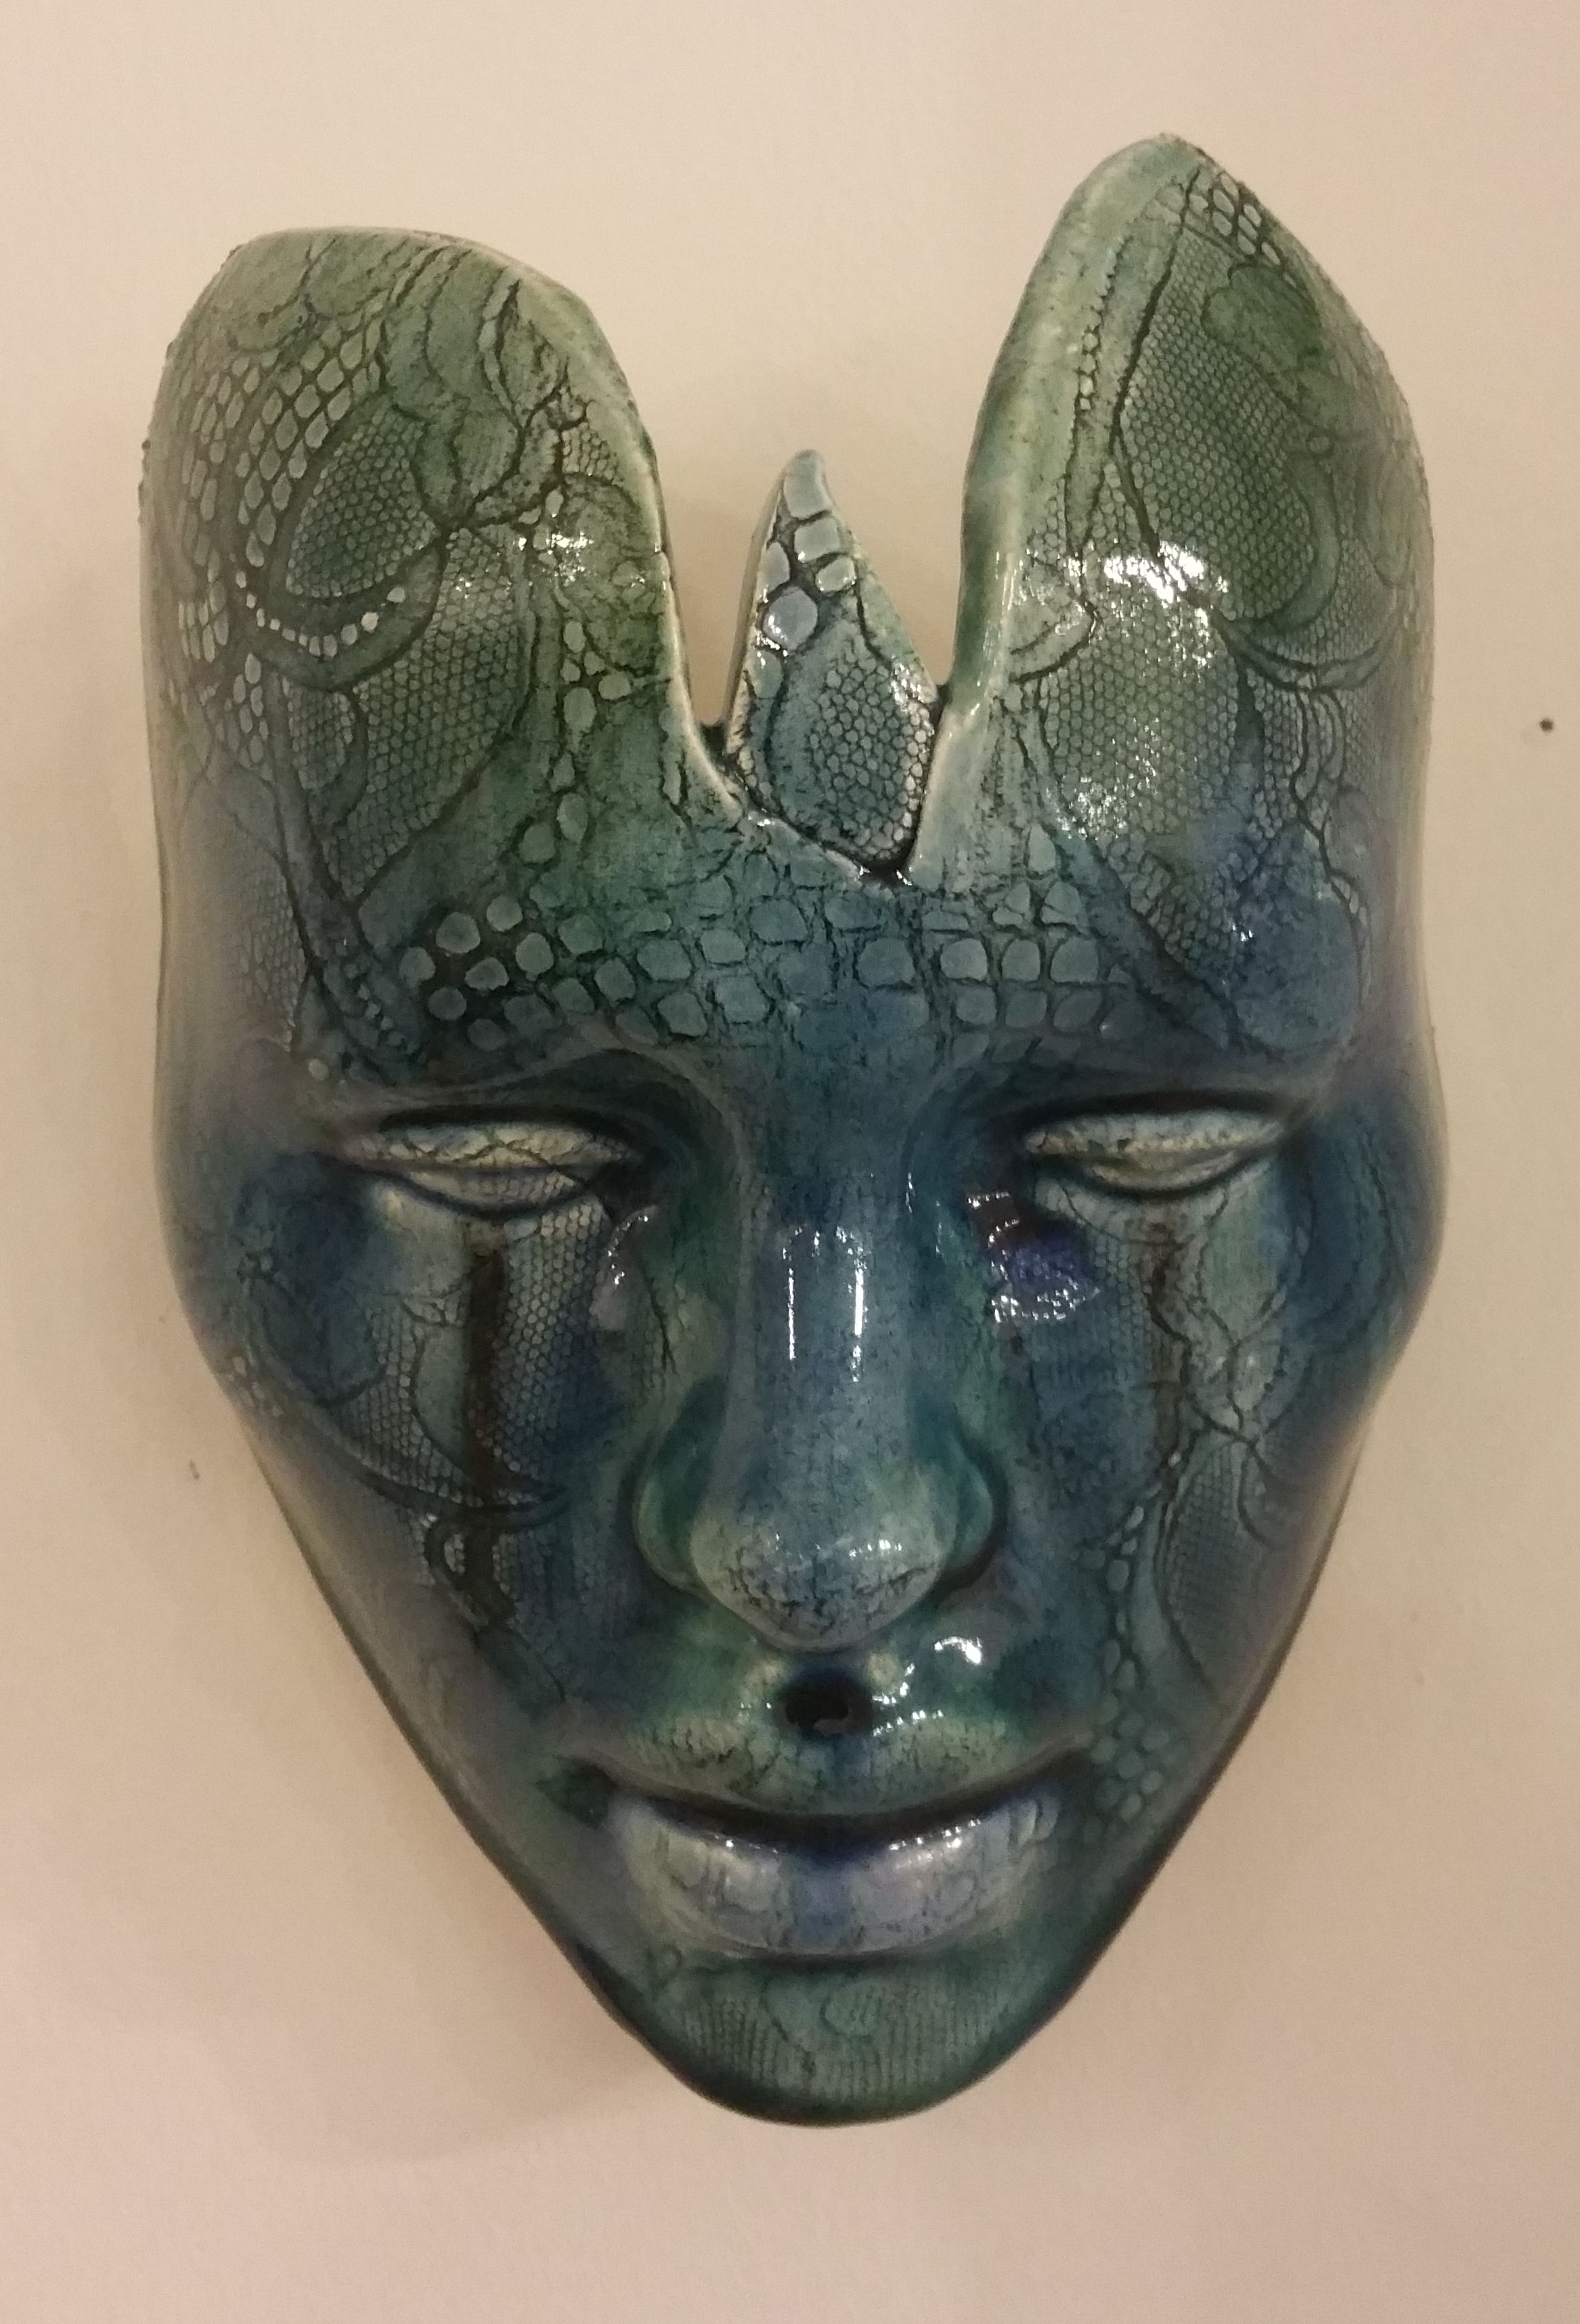 'Mask VIII' by artist Julian Smith